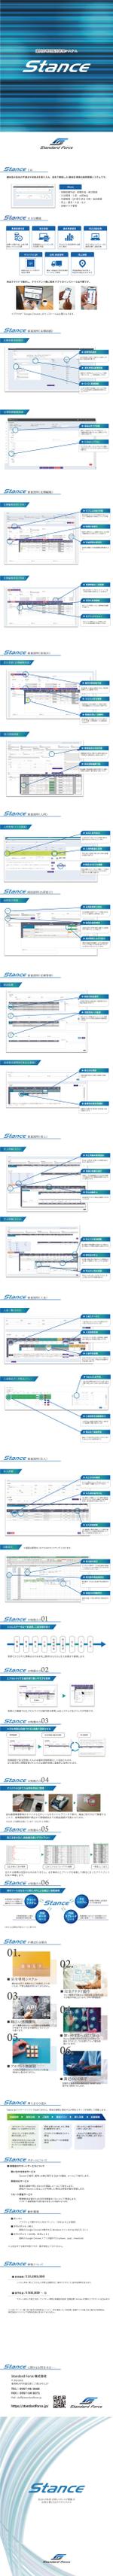 くみ (komikumi042)さんのクラウド型販売管理システム「Stance」のカタログデザインへの提案